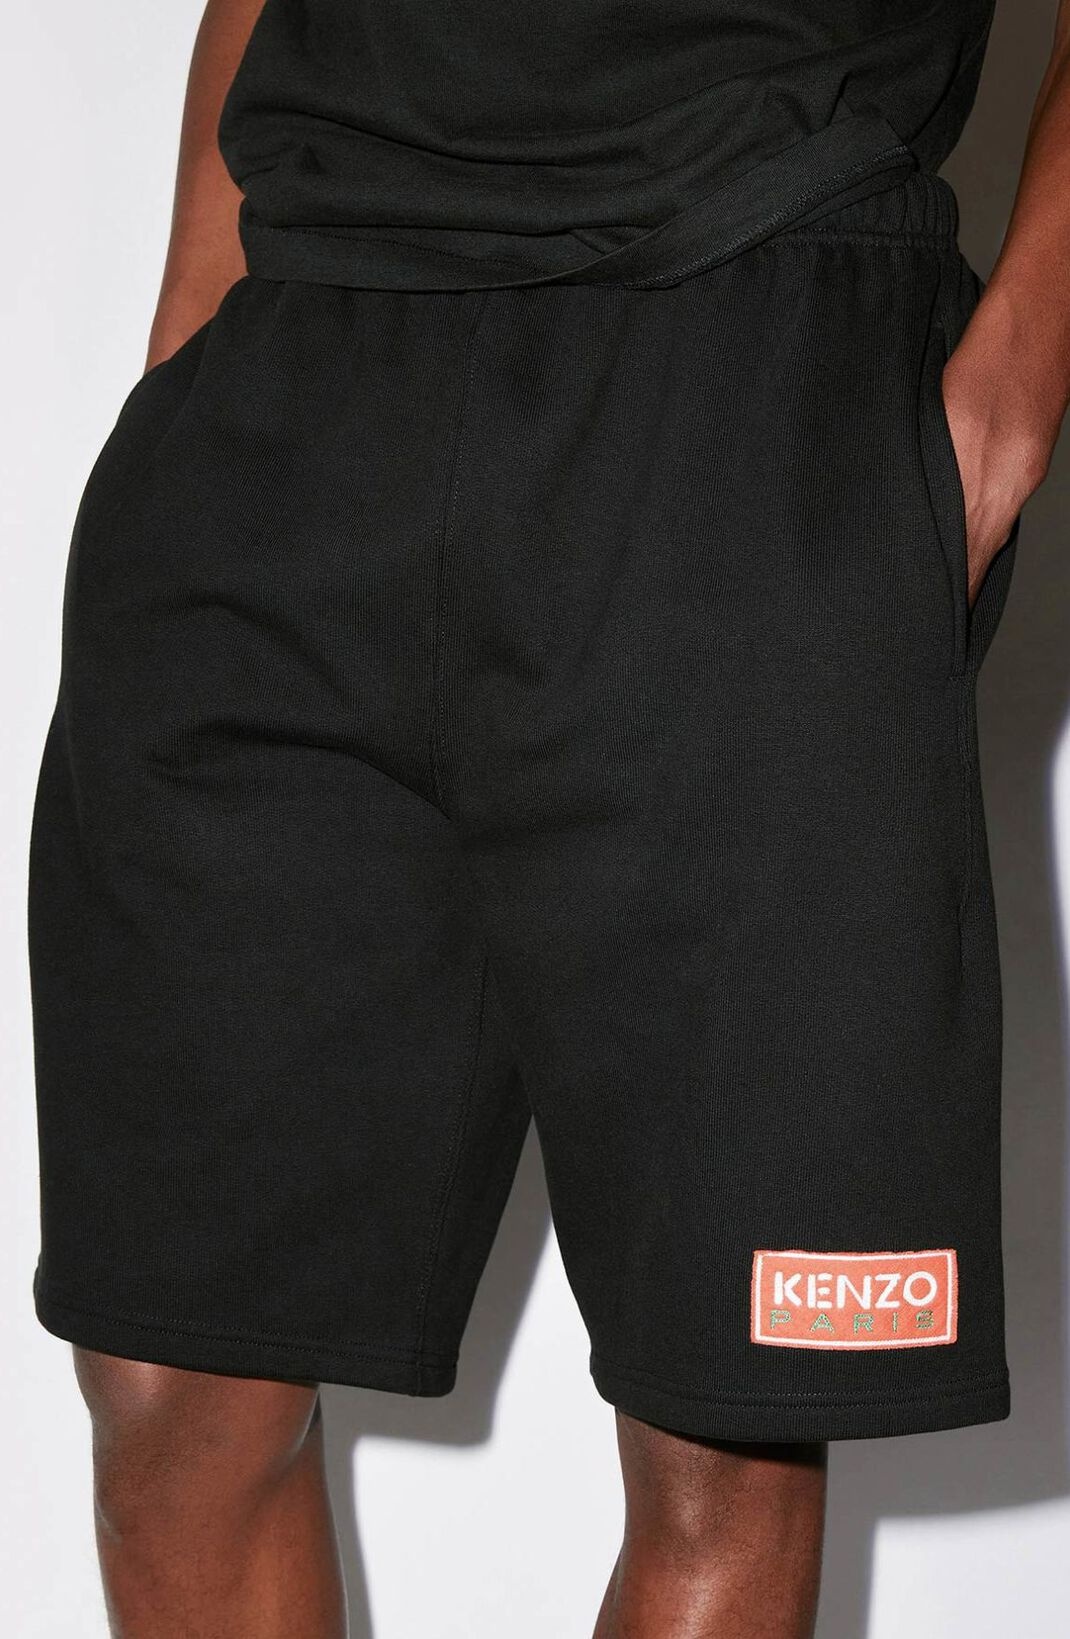 KENZO Paris shorts - 6